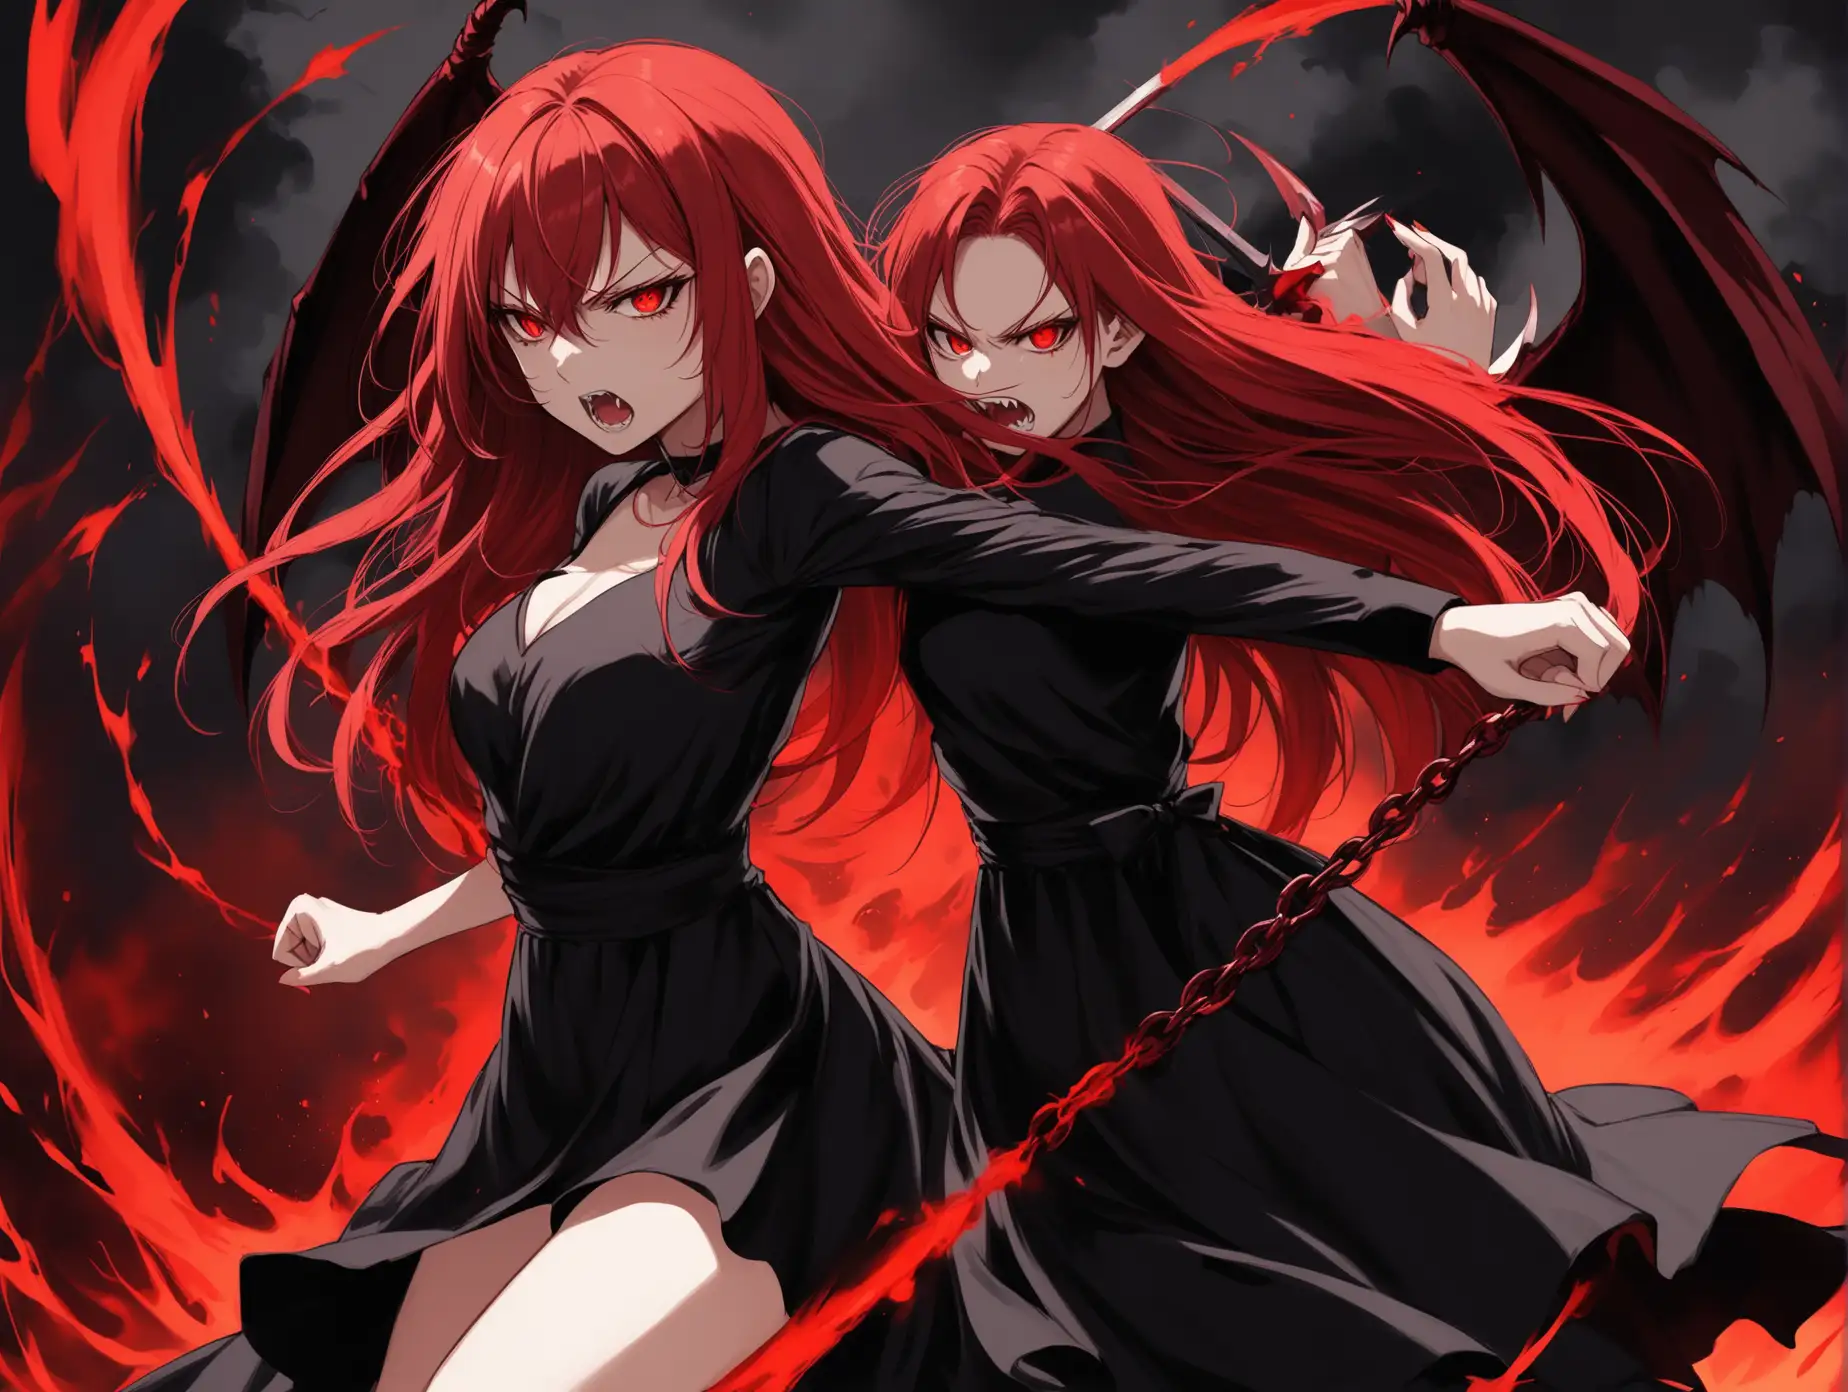 Evil girl fight demons red hair black dress FHD 